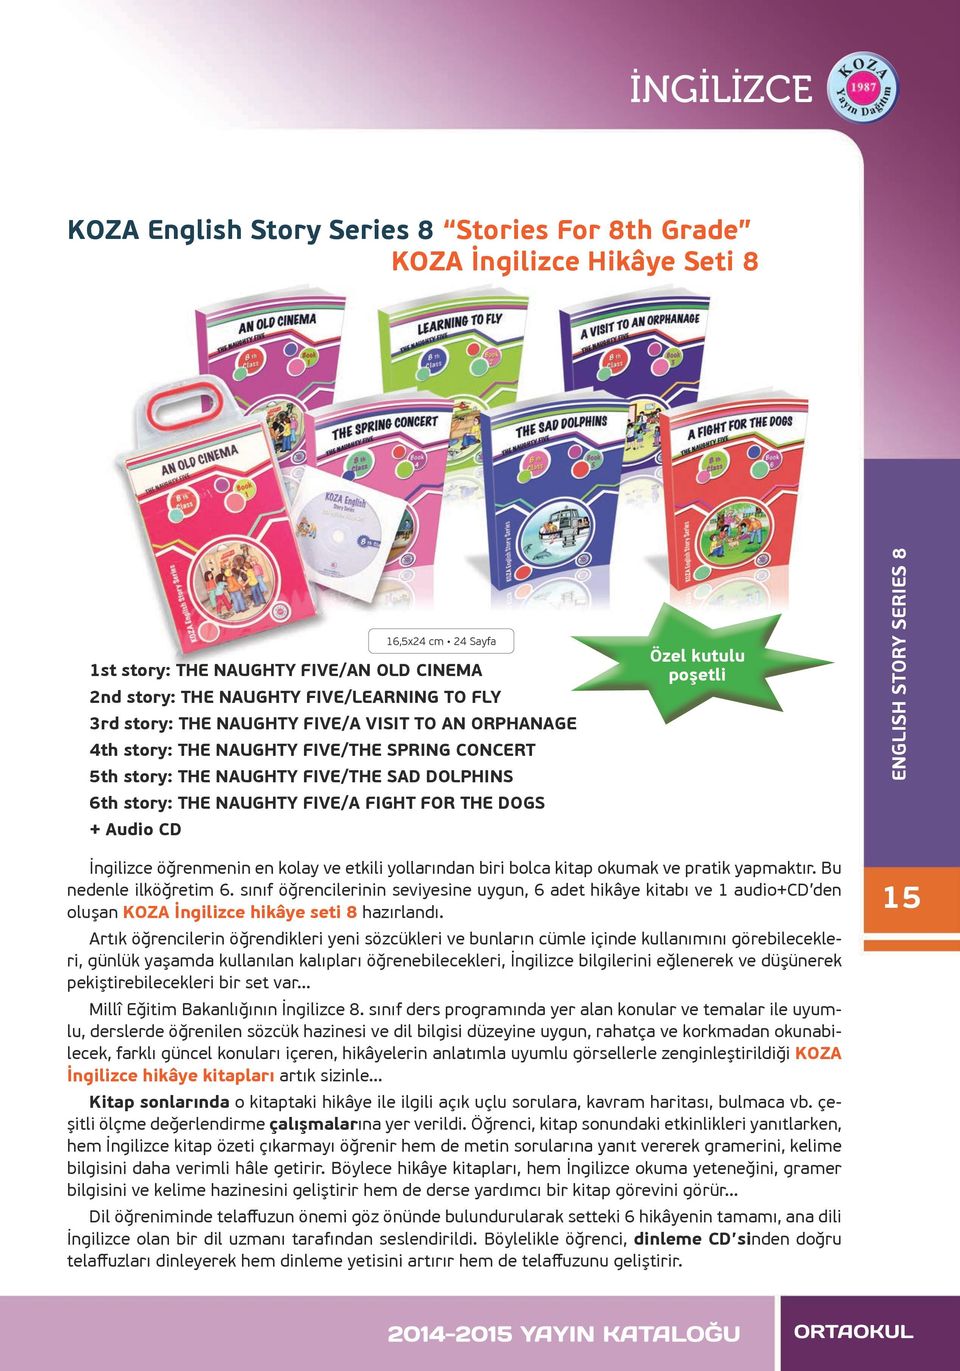 kutulu poşetli ENGLISH STORY SERIES 8 İngilizce öğrenmenin en kolay ve etkili yollarından biri bolca kitap okumak ve pratik yapmaktır. Bu nedenle ilköğretim 6.